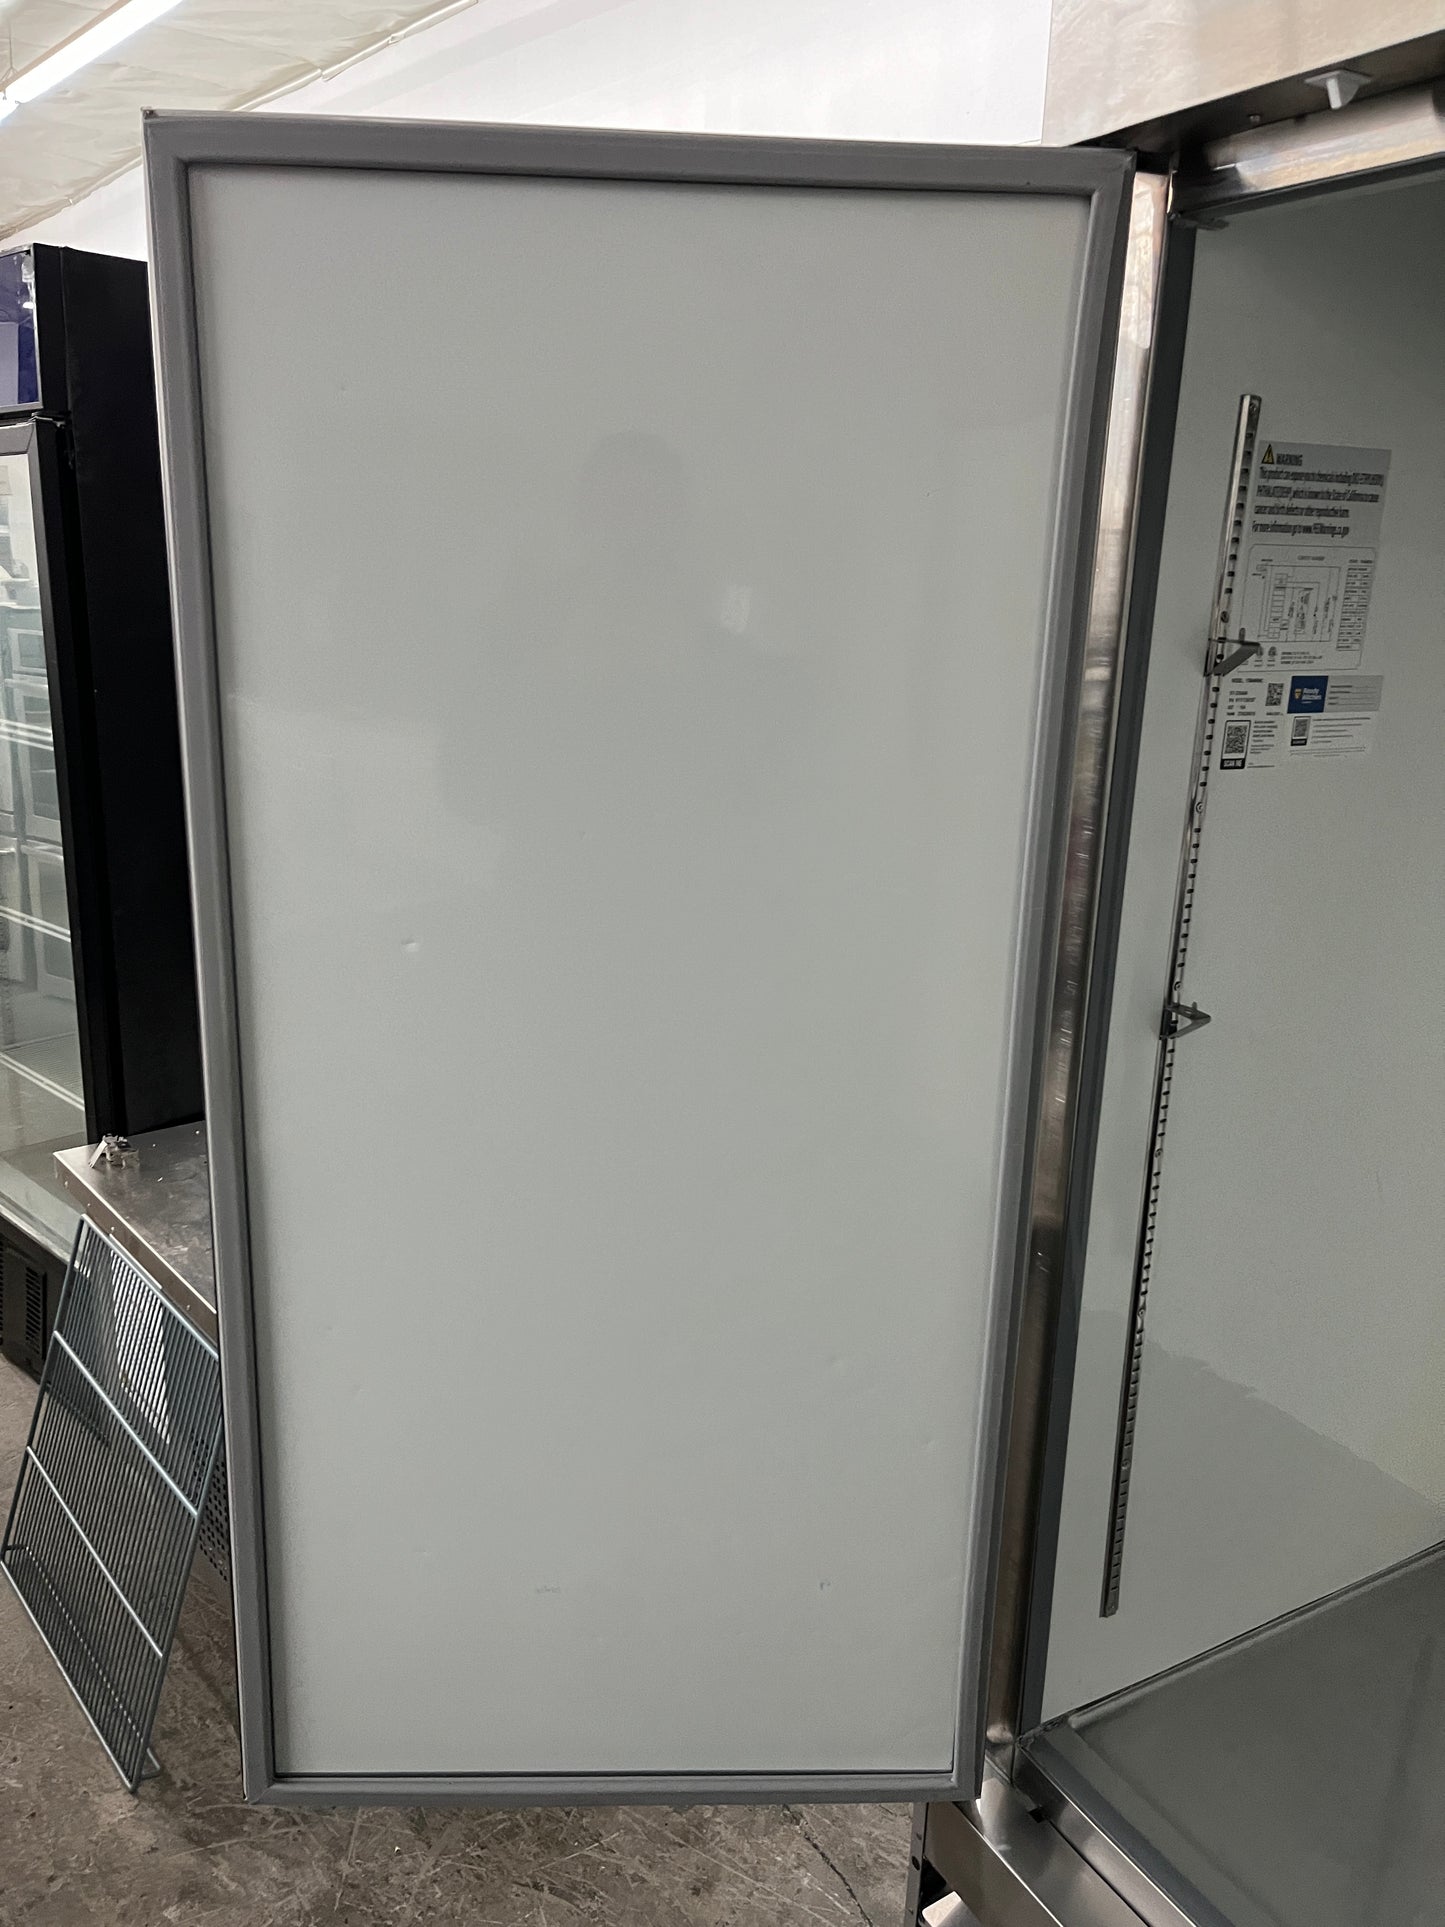 Avantco A-49R-HC 54 Inch, 2 Solid Door Reach-In Commercial Refrigerator , 178A49RHC, 369316